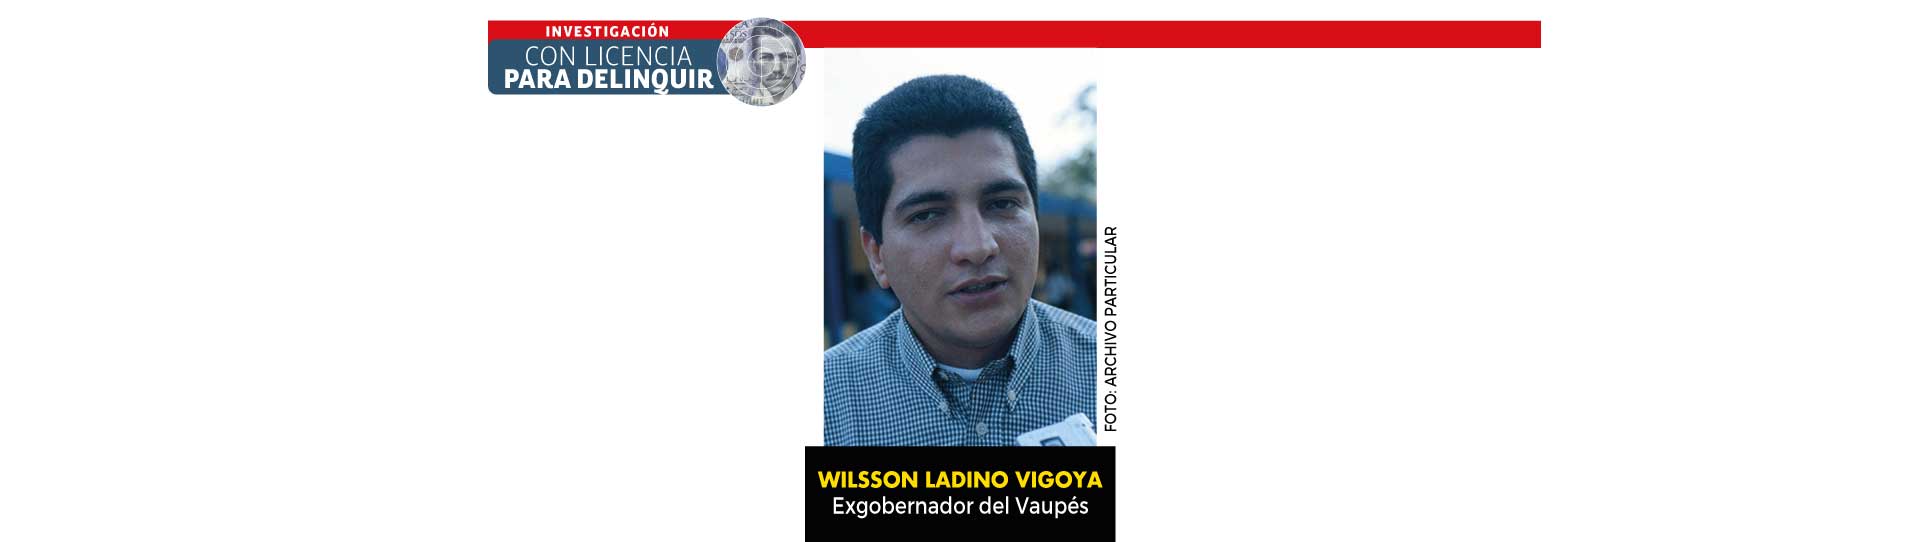 Con licencia para delinquir - Corrupción en el Vaupés: cinco gobernadores condenados